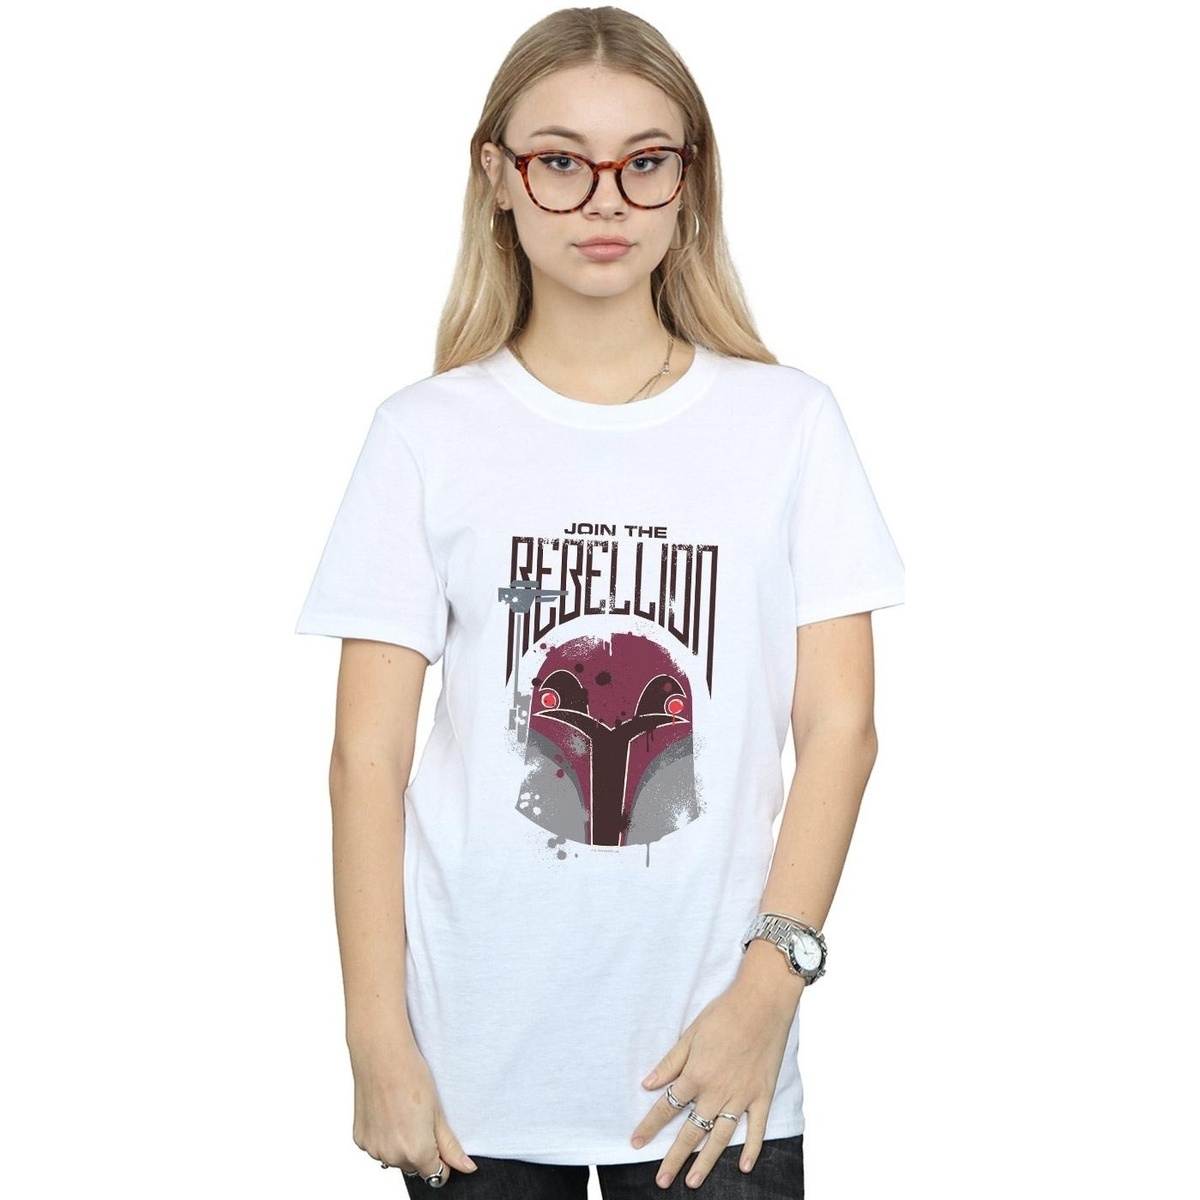 textil Mujer Camisetas manga larga Disney Rebels Rebellion Blanco